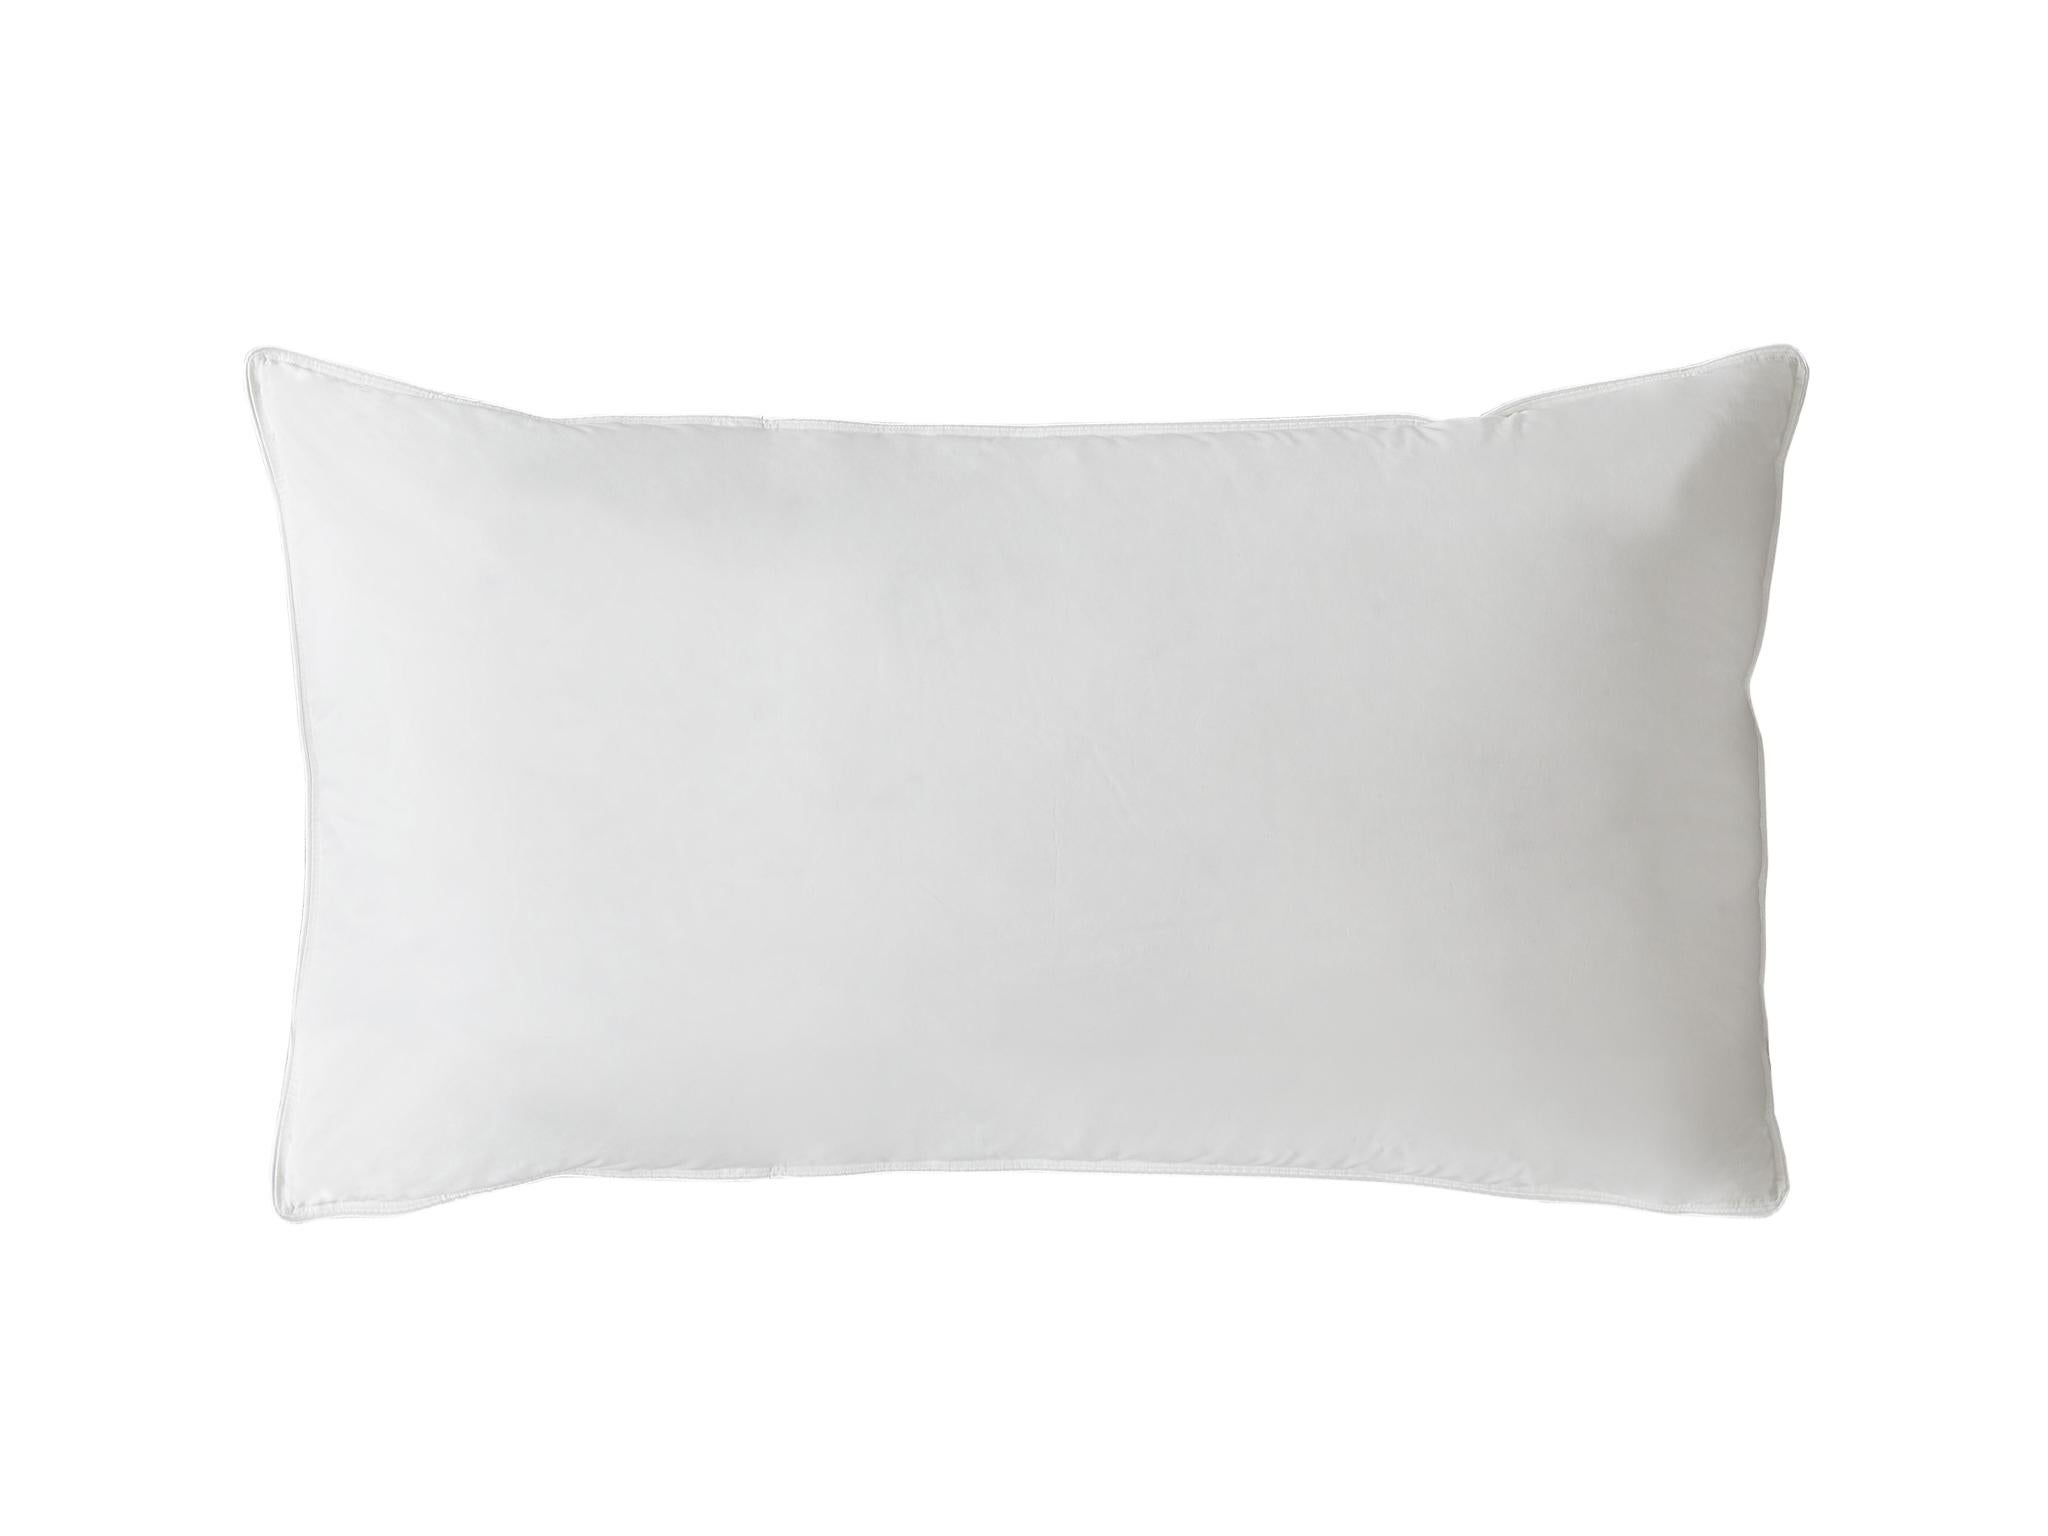 buy firm pillow